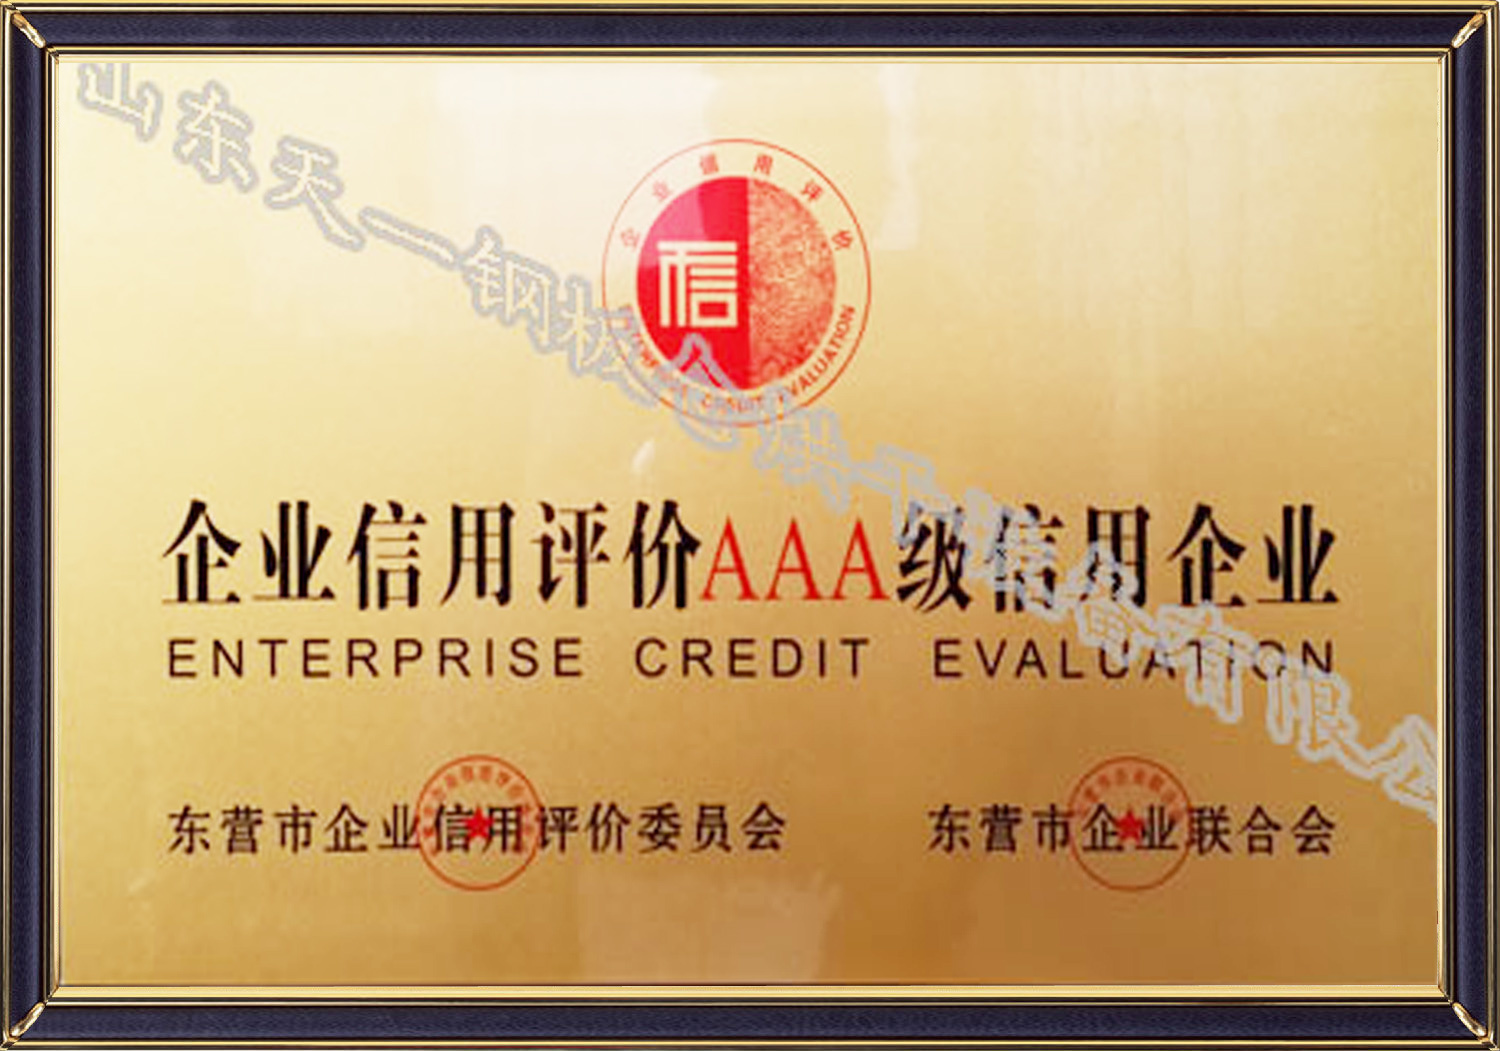 Enterprise qualification